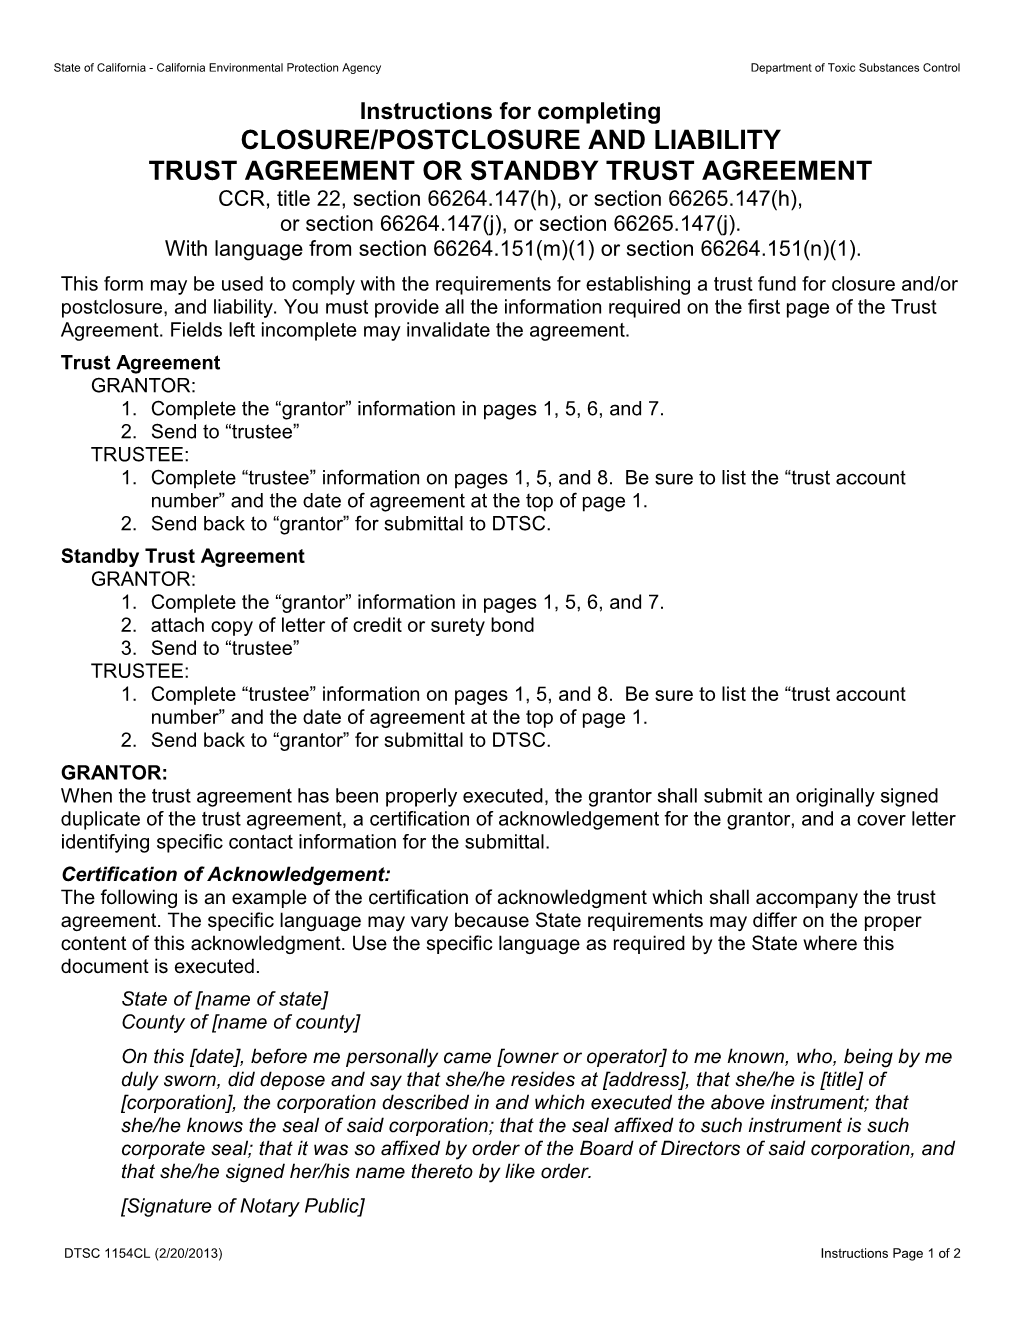 Closure/Postclosure Trust Agreement